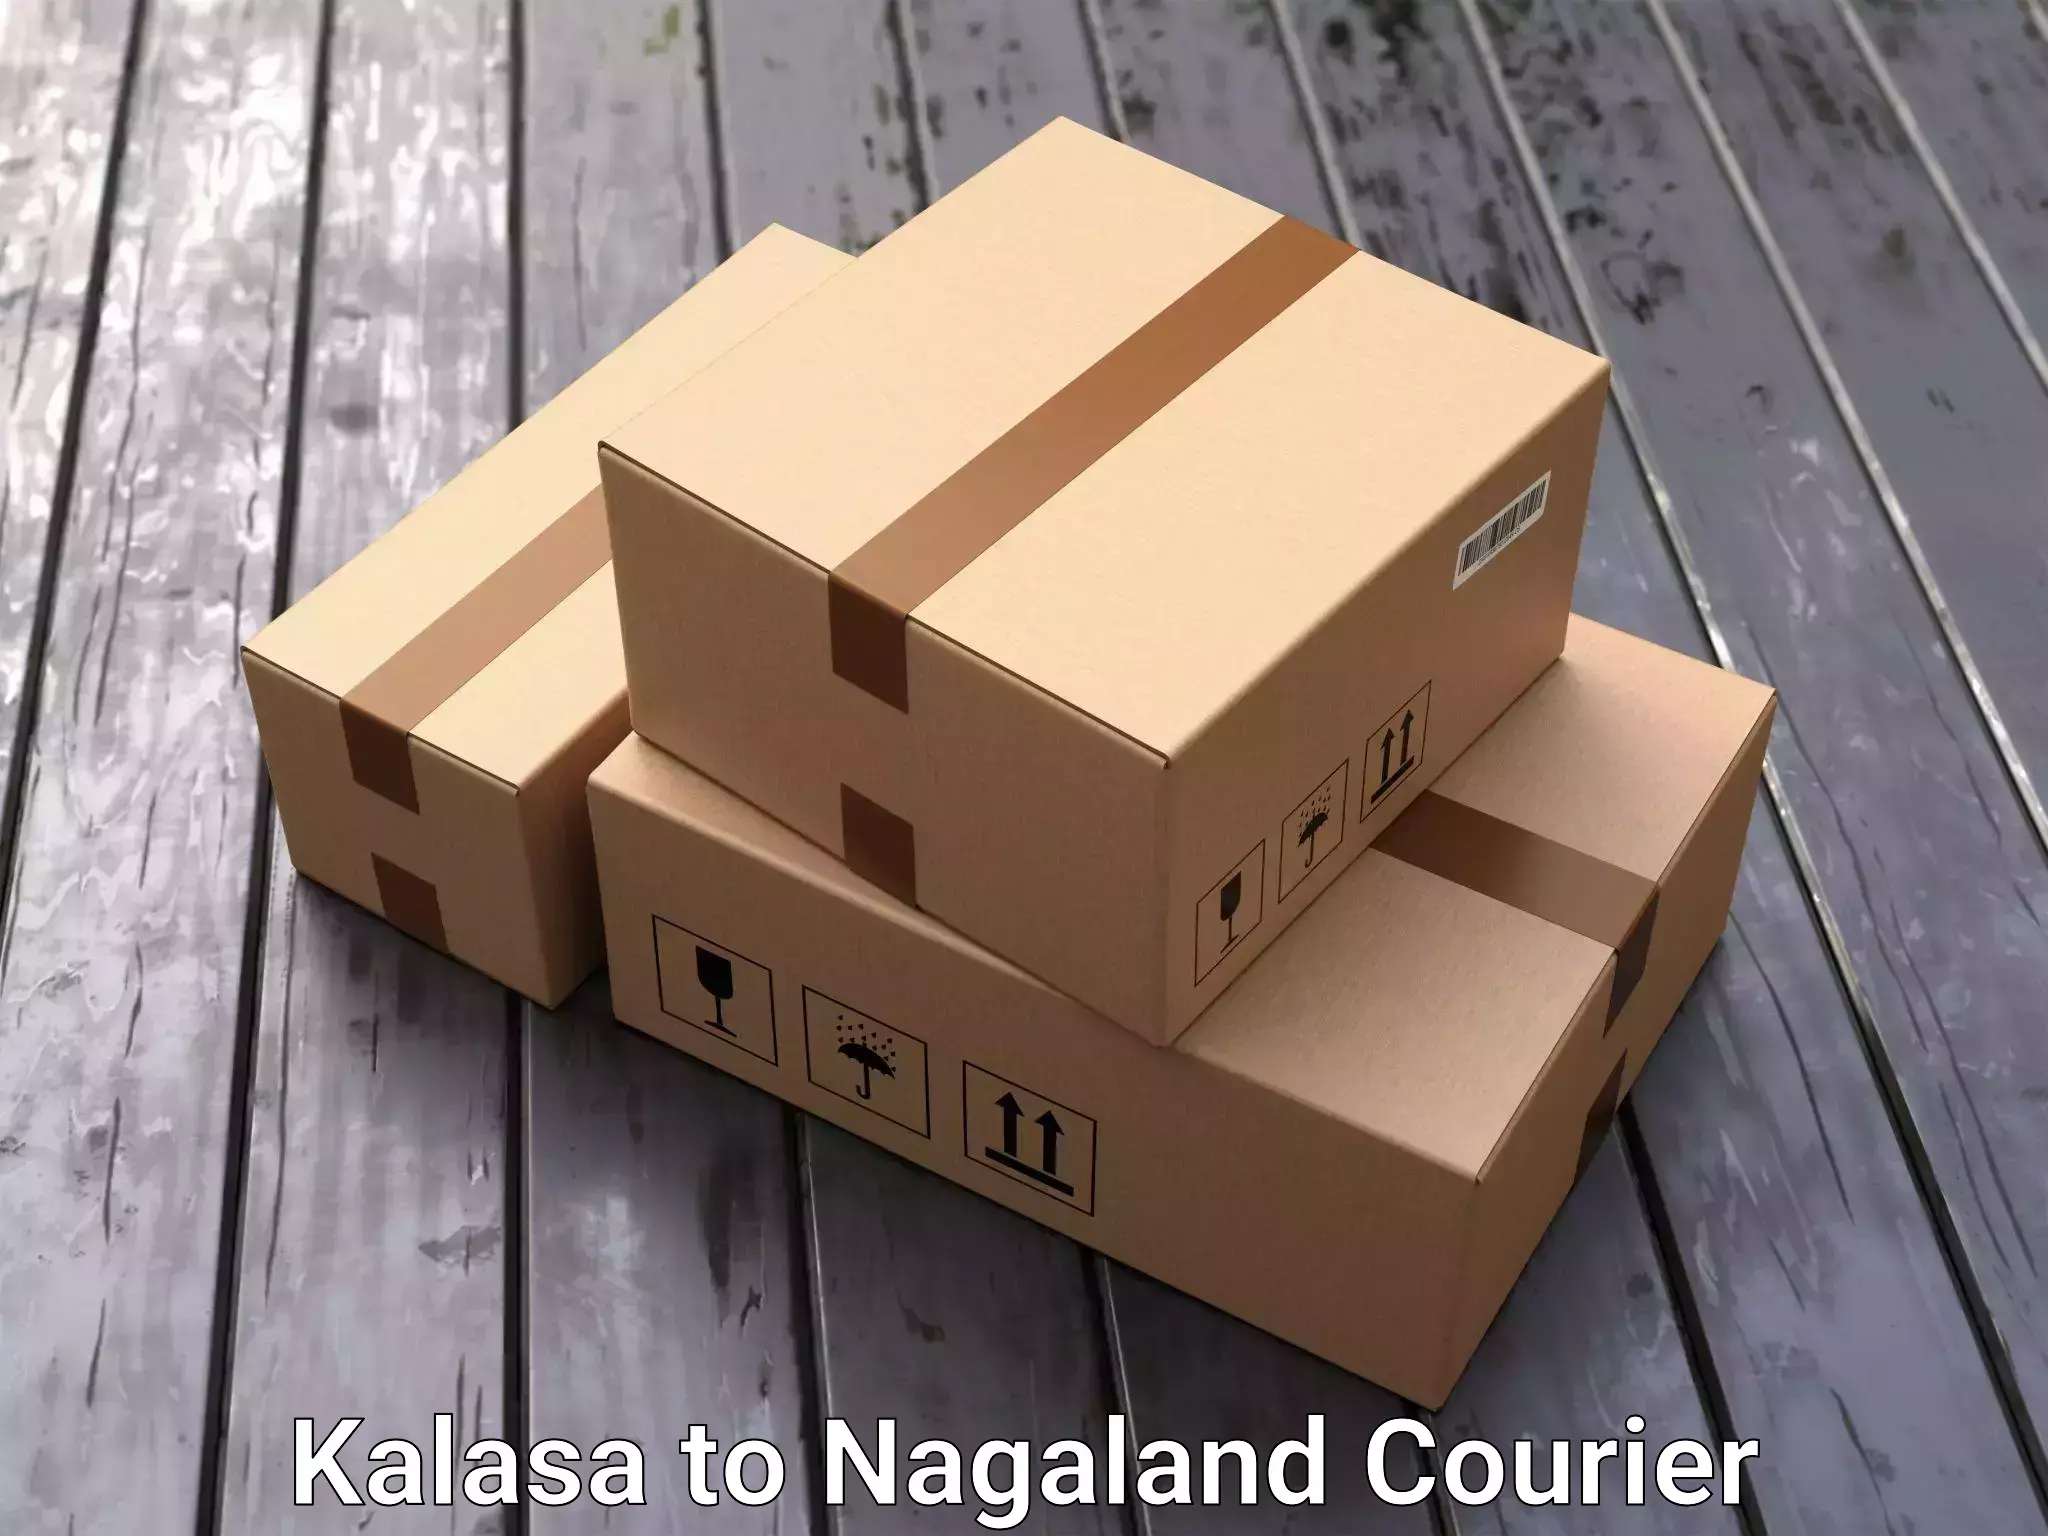 Furniture transport specialists Kalasa to Nagaland